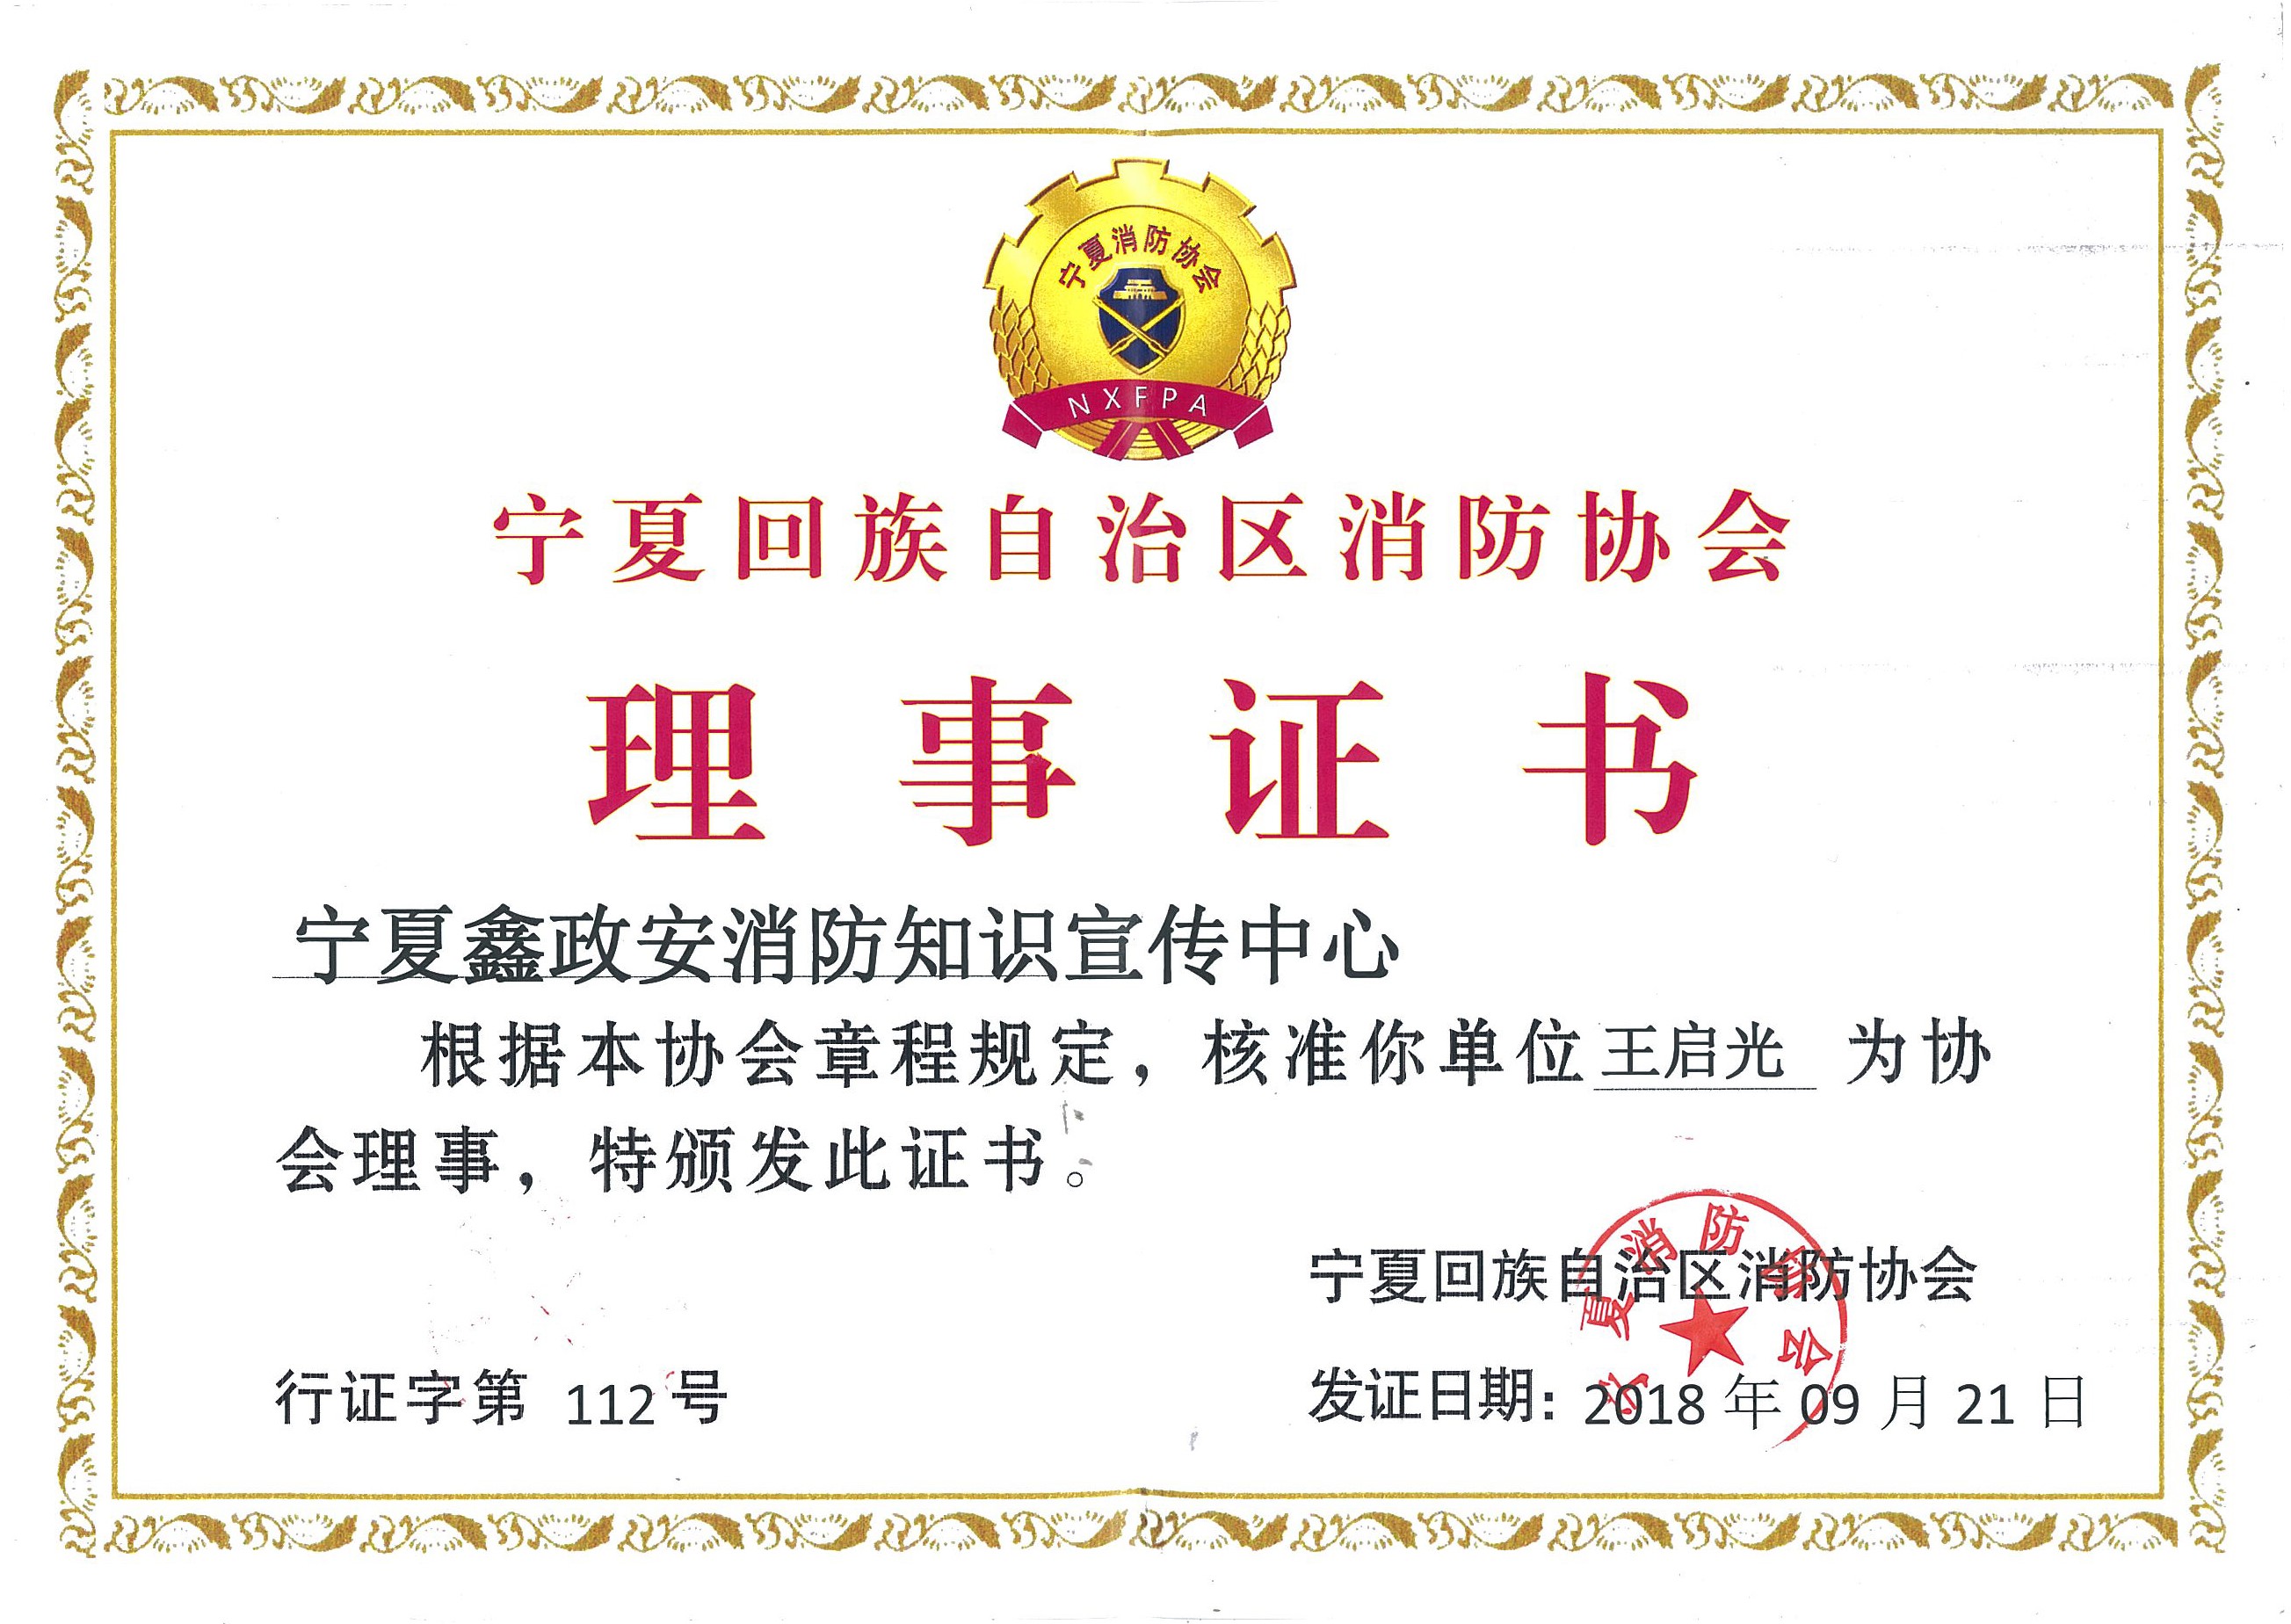 政安消防宁夏分中心核准为宁夏回族自治区消防协会“理事单位”